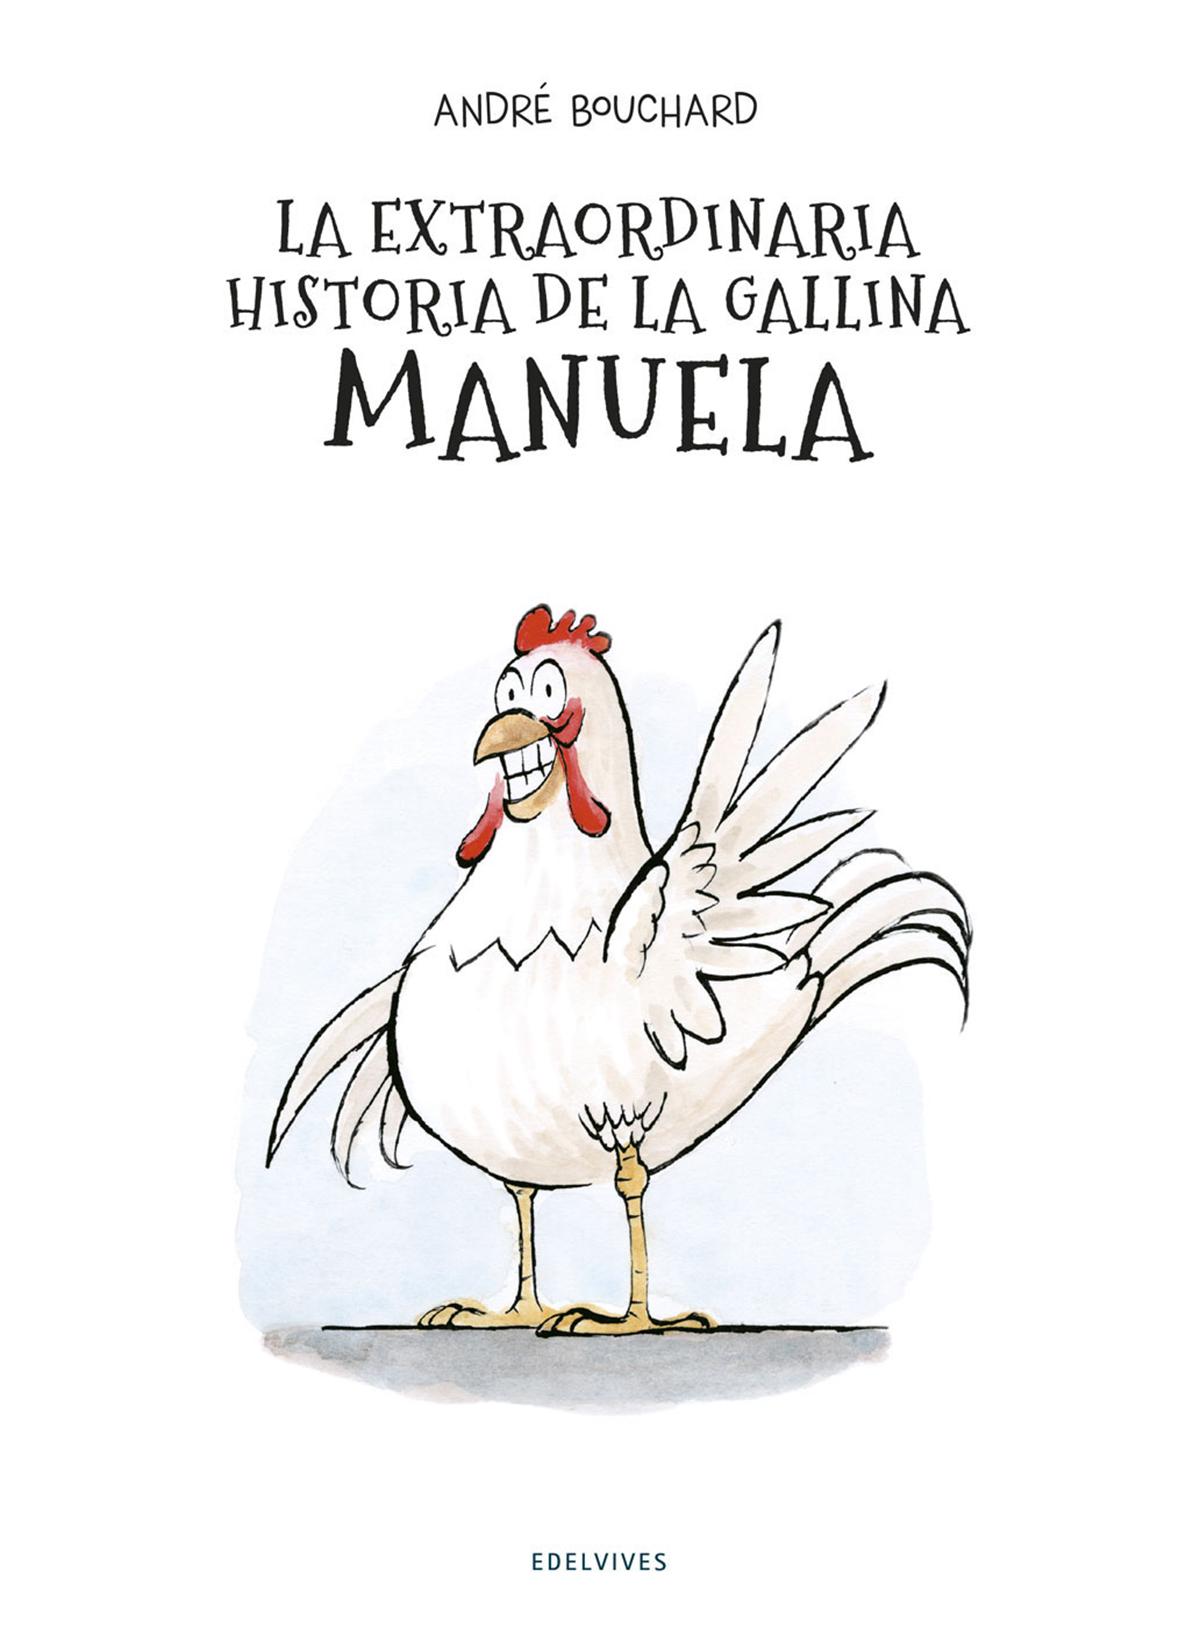 La extraordinaria historia de la gallina manuela